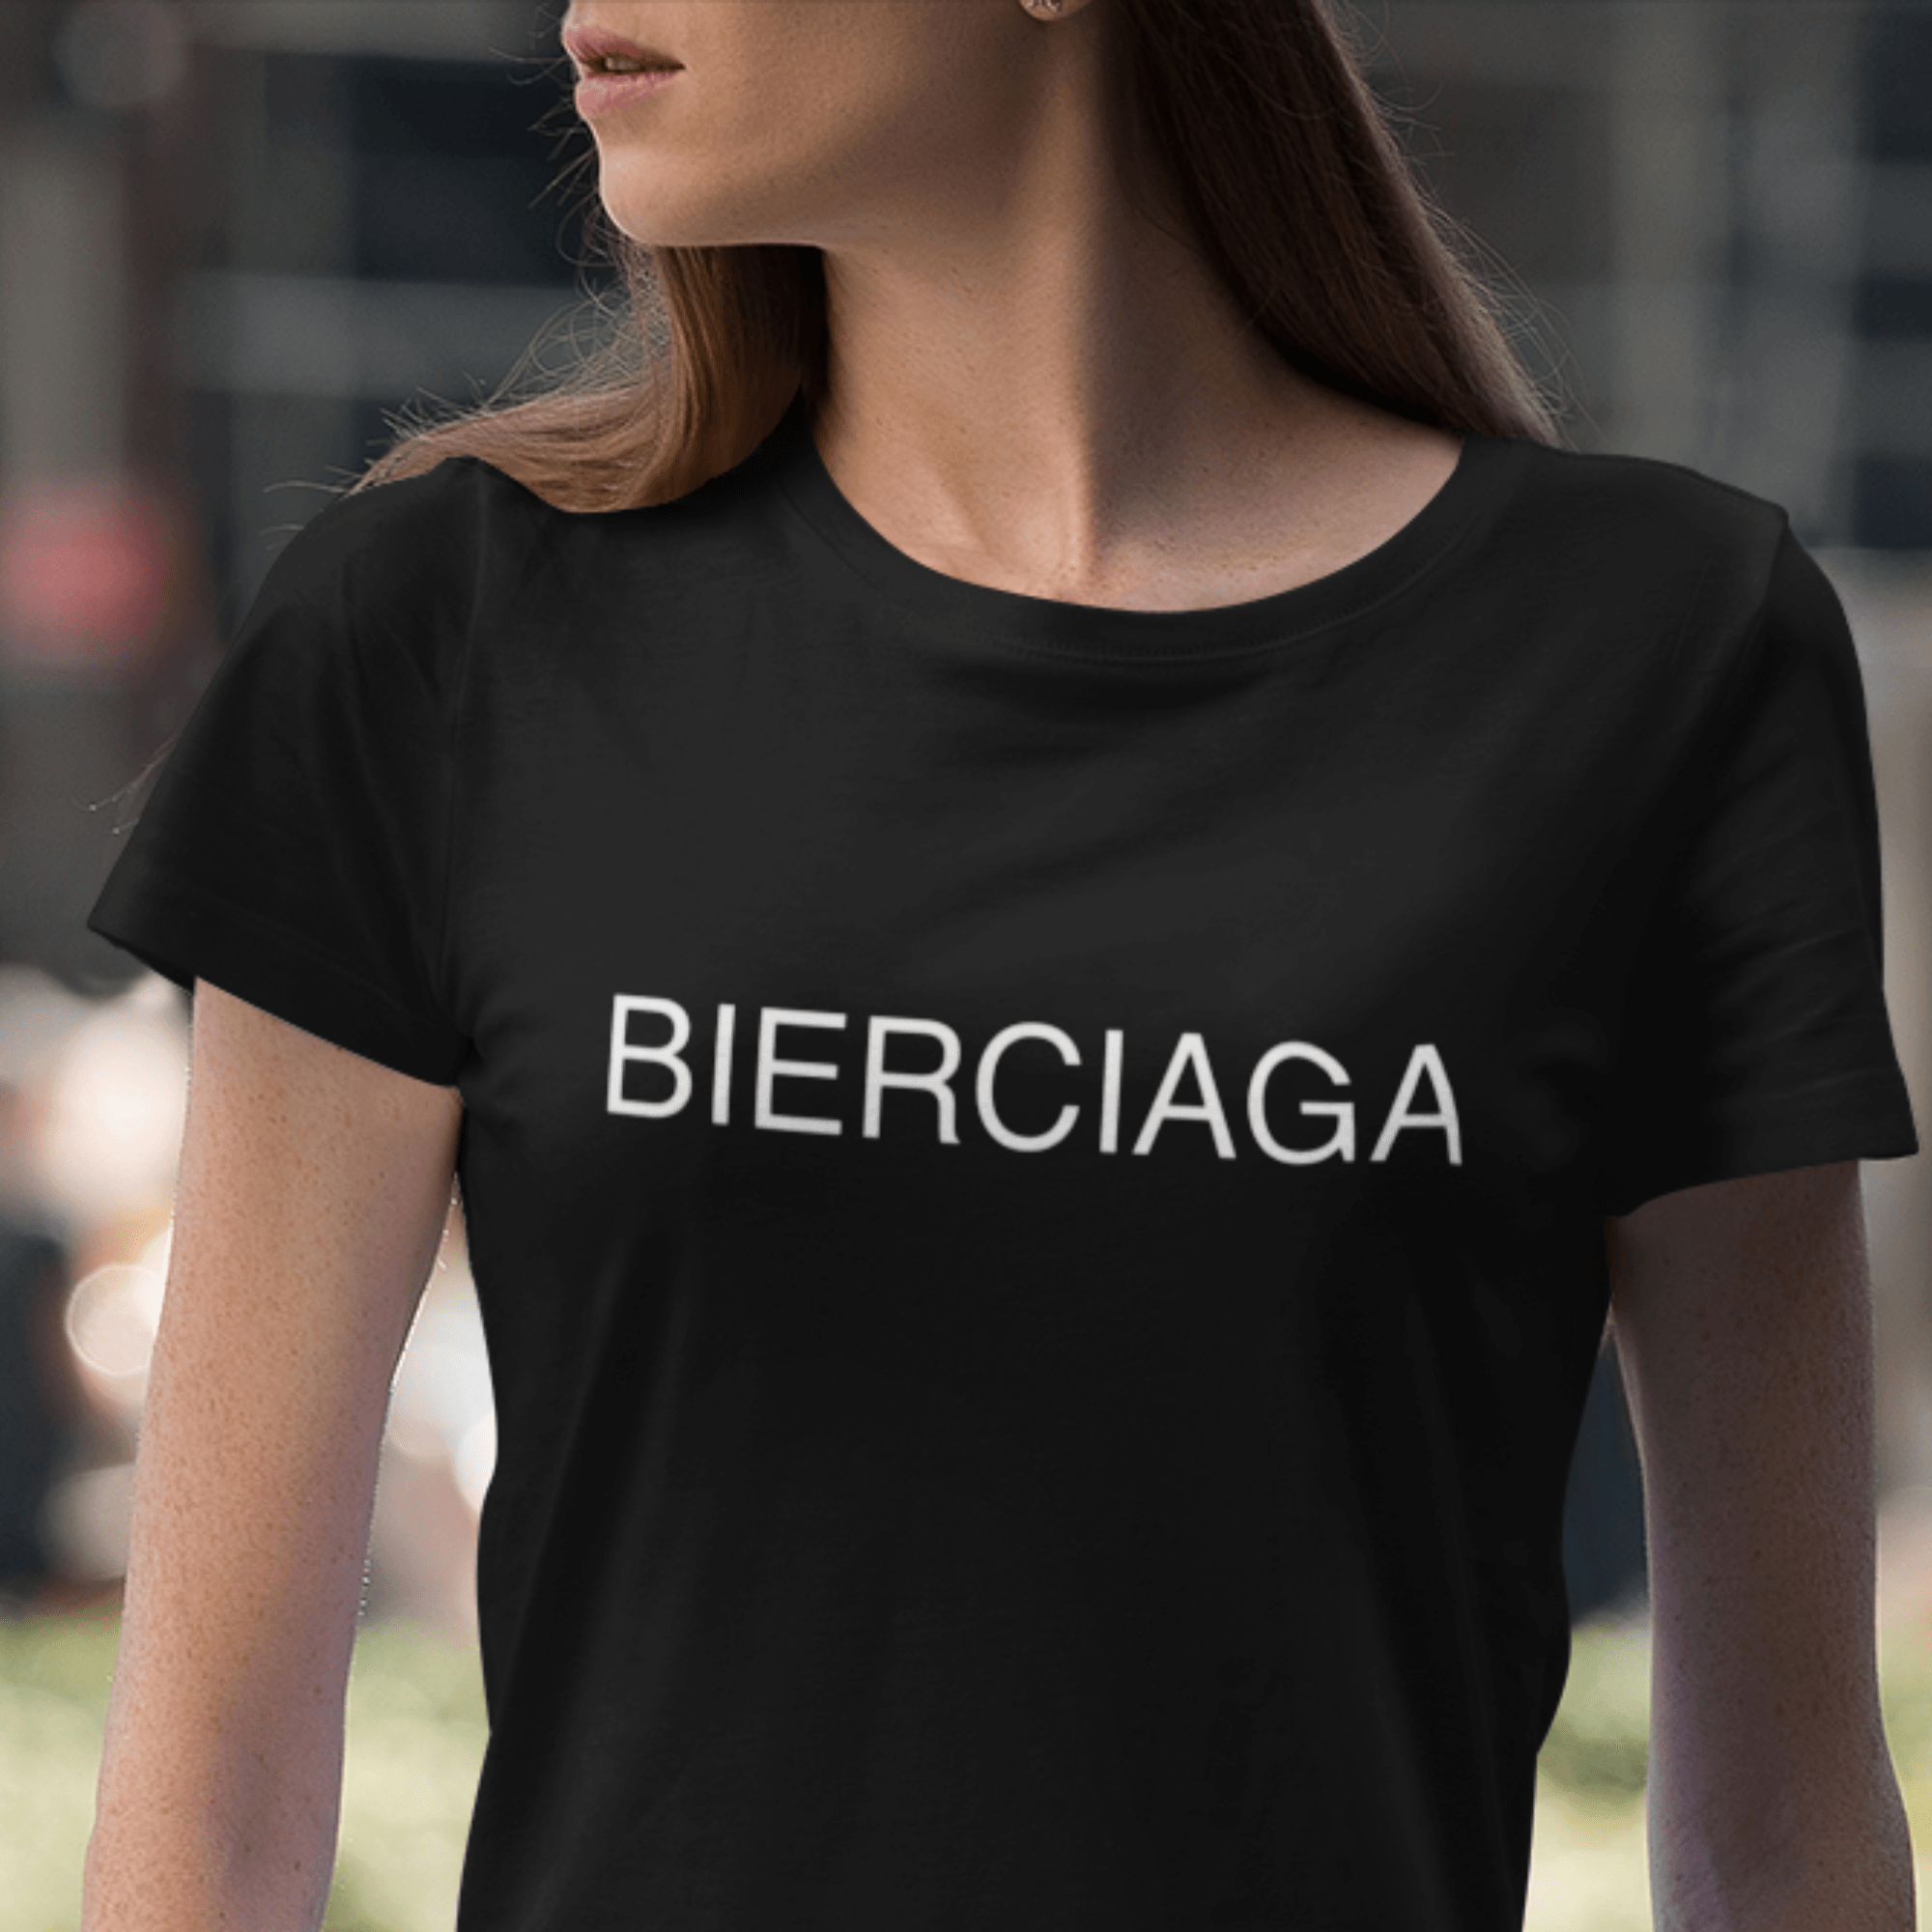 BIERCIAGA  - Damen Organic Shirt